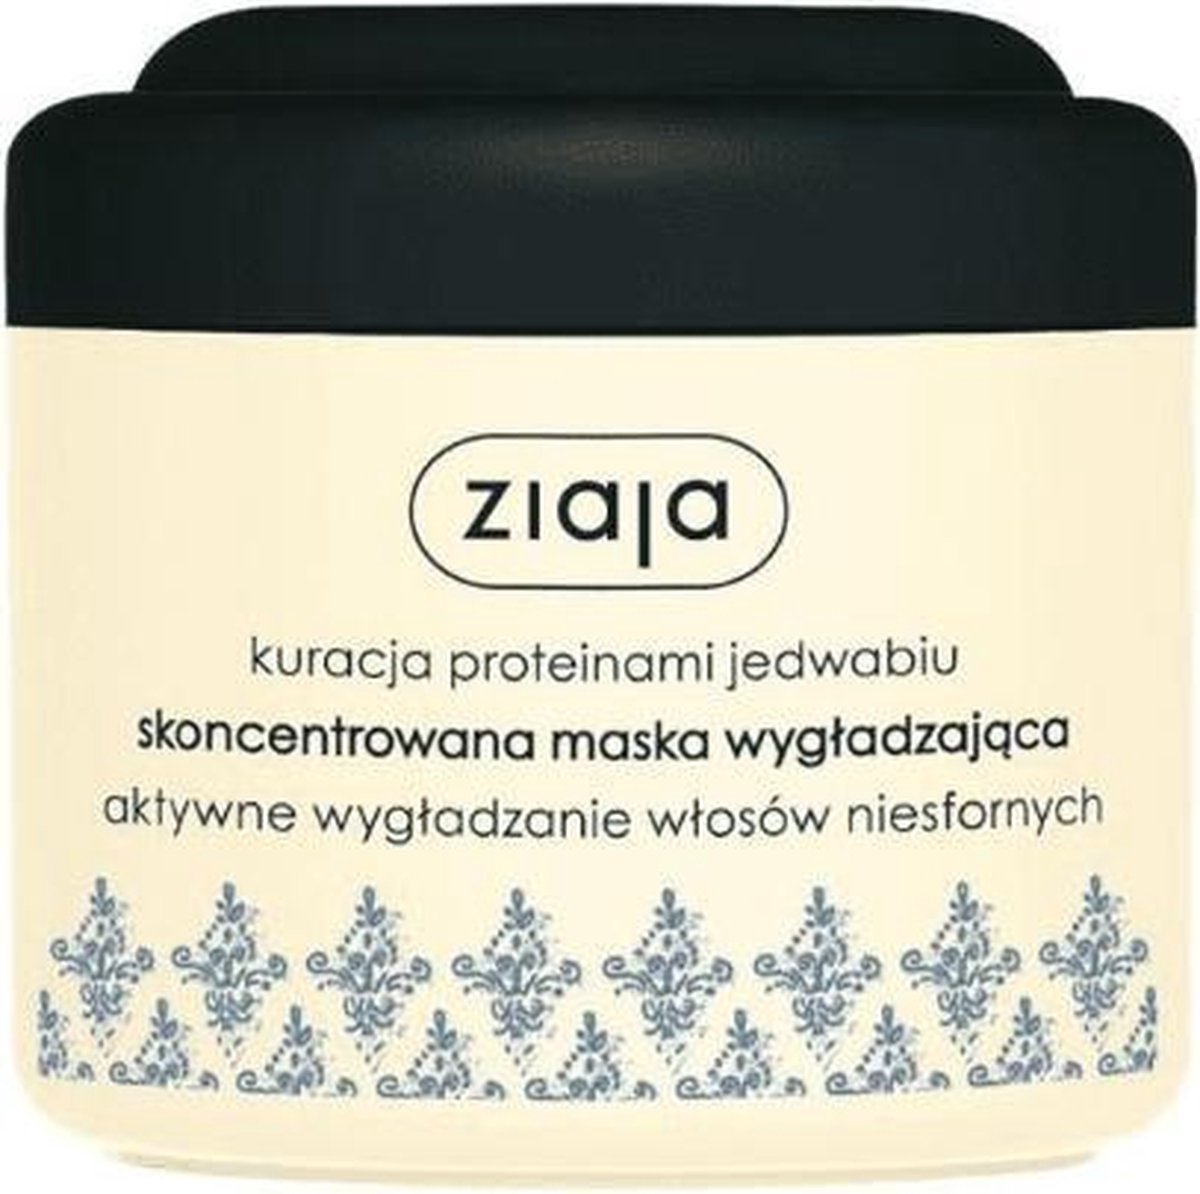 Ziaja - Hair mask for intense smoothing 200 ml - 200ml